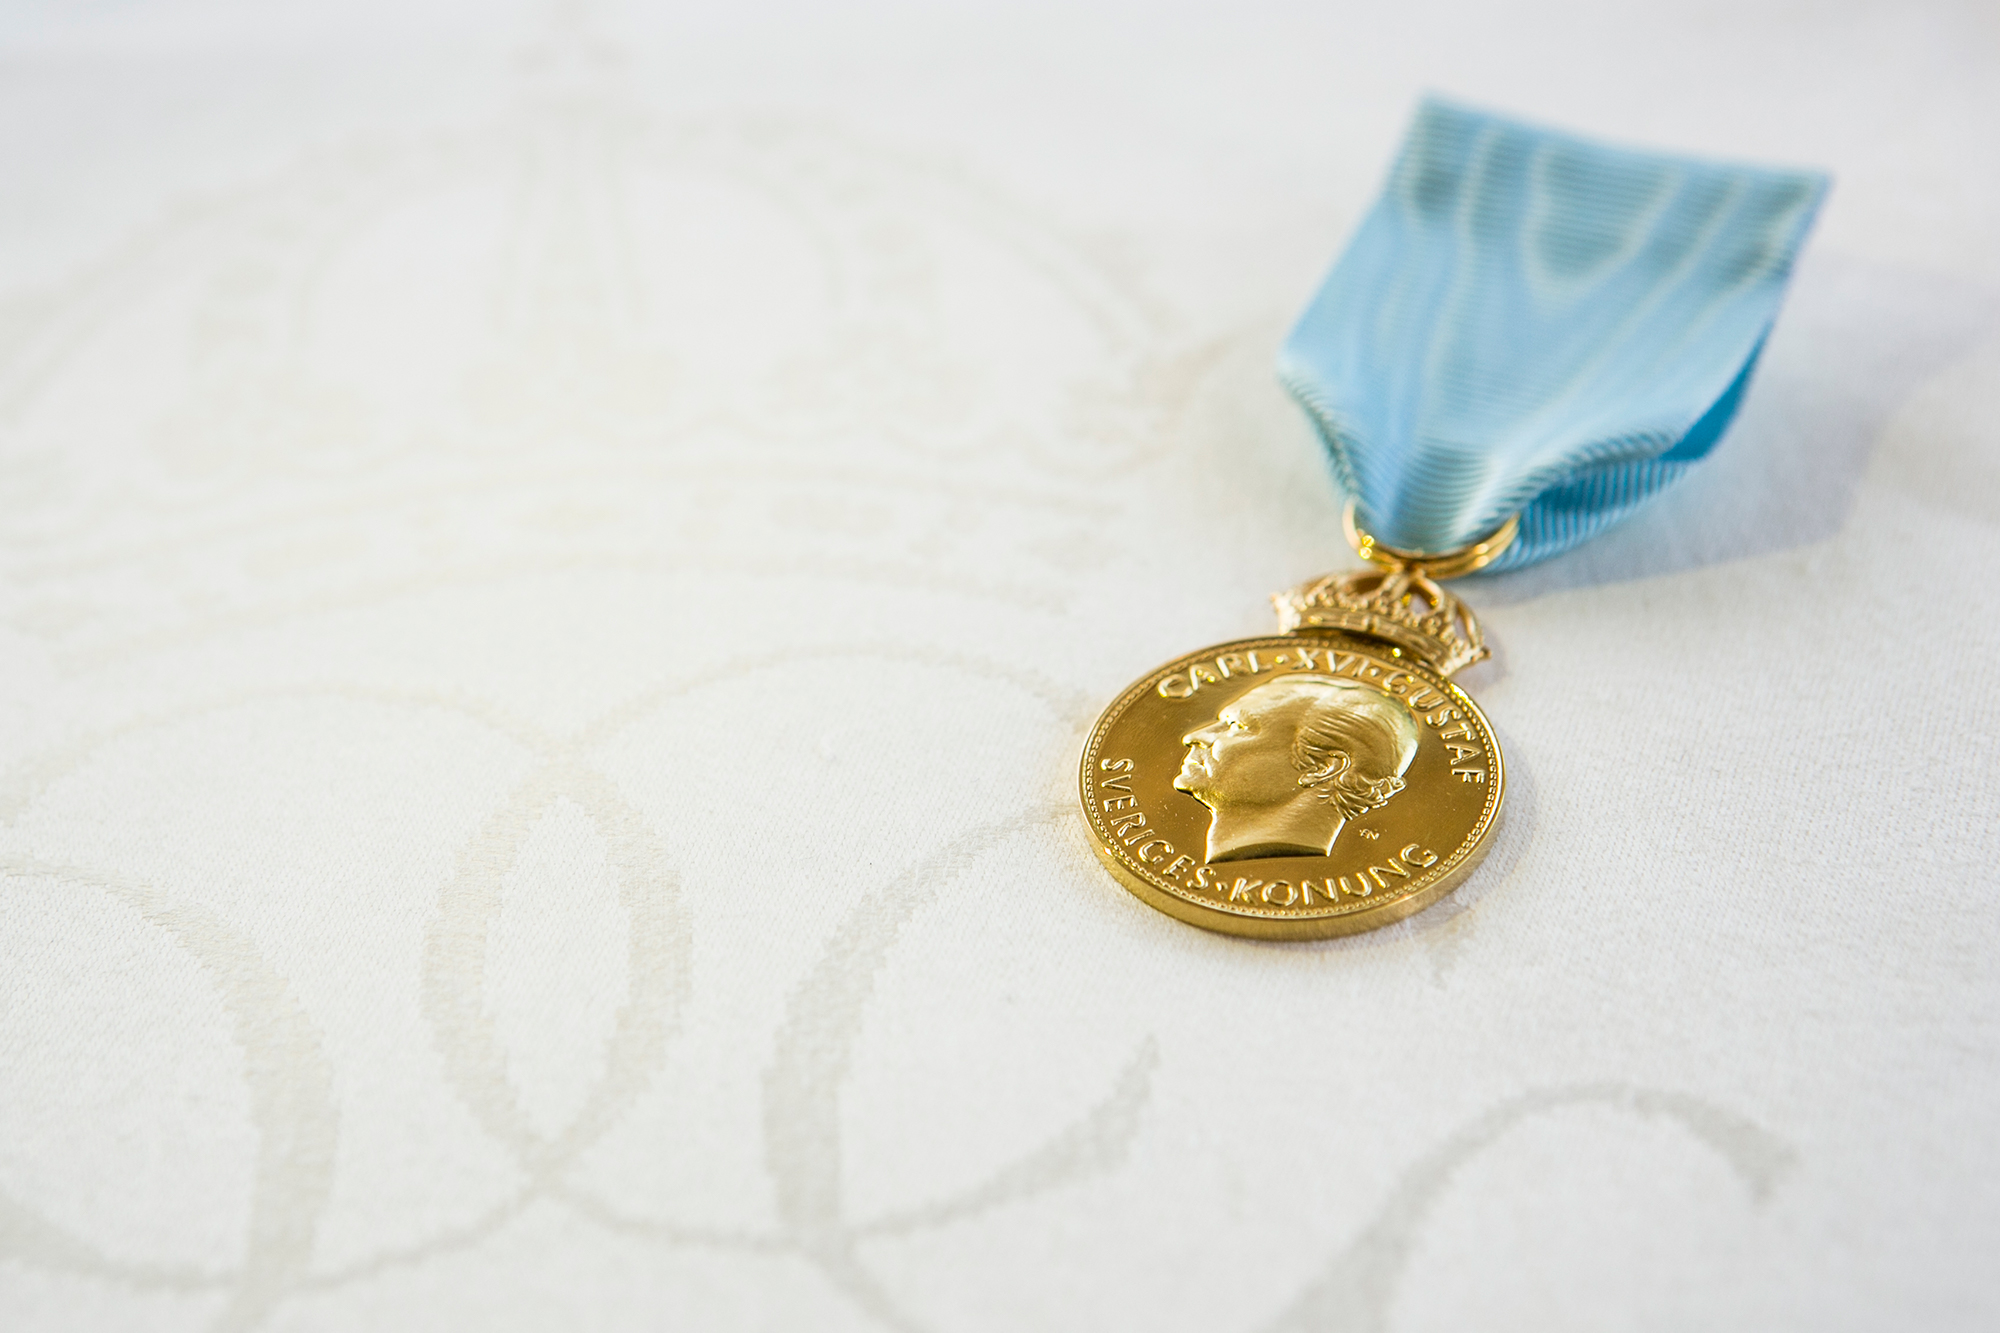 Royal medal for Klässbol